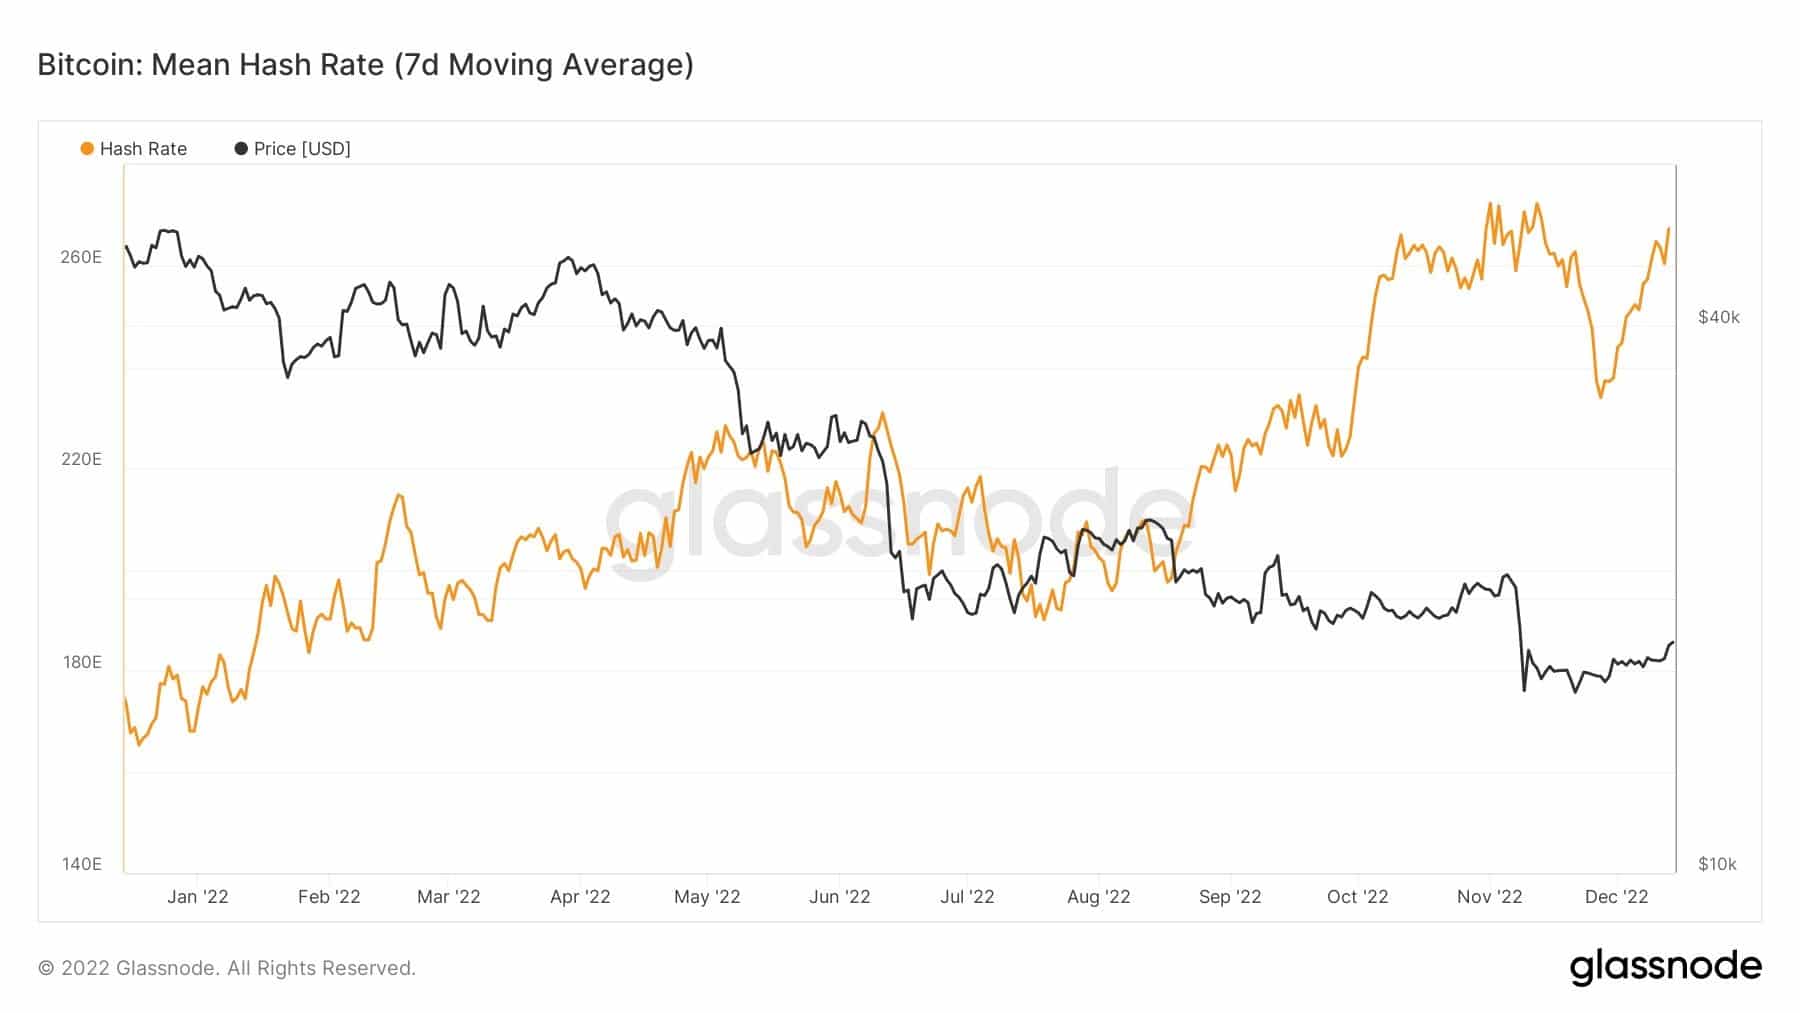 Wykres pokazujący cenę Bitcoina i hash rate w 2022 roku (Źródło: Glassnode)